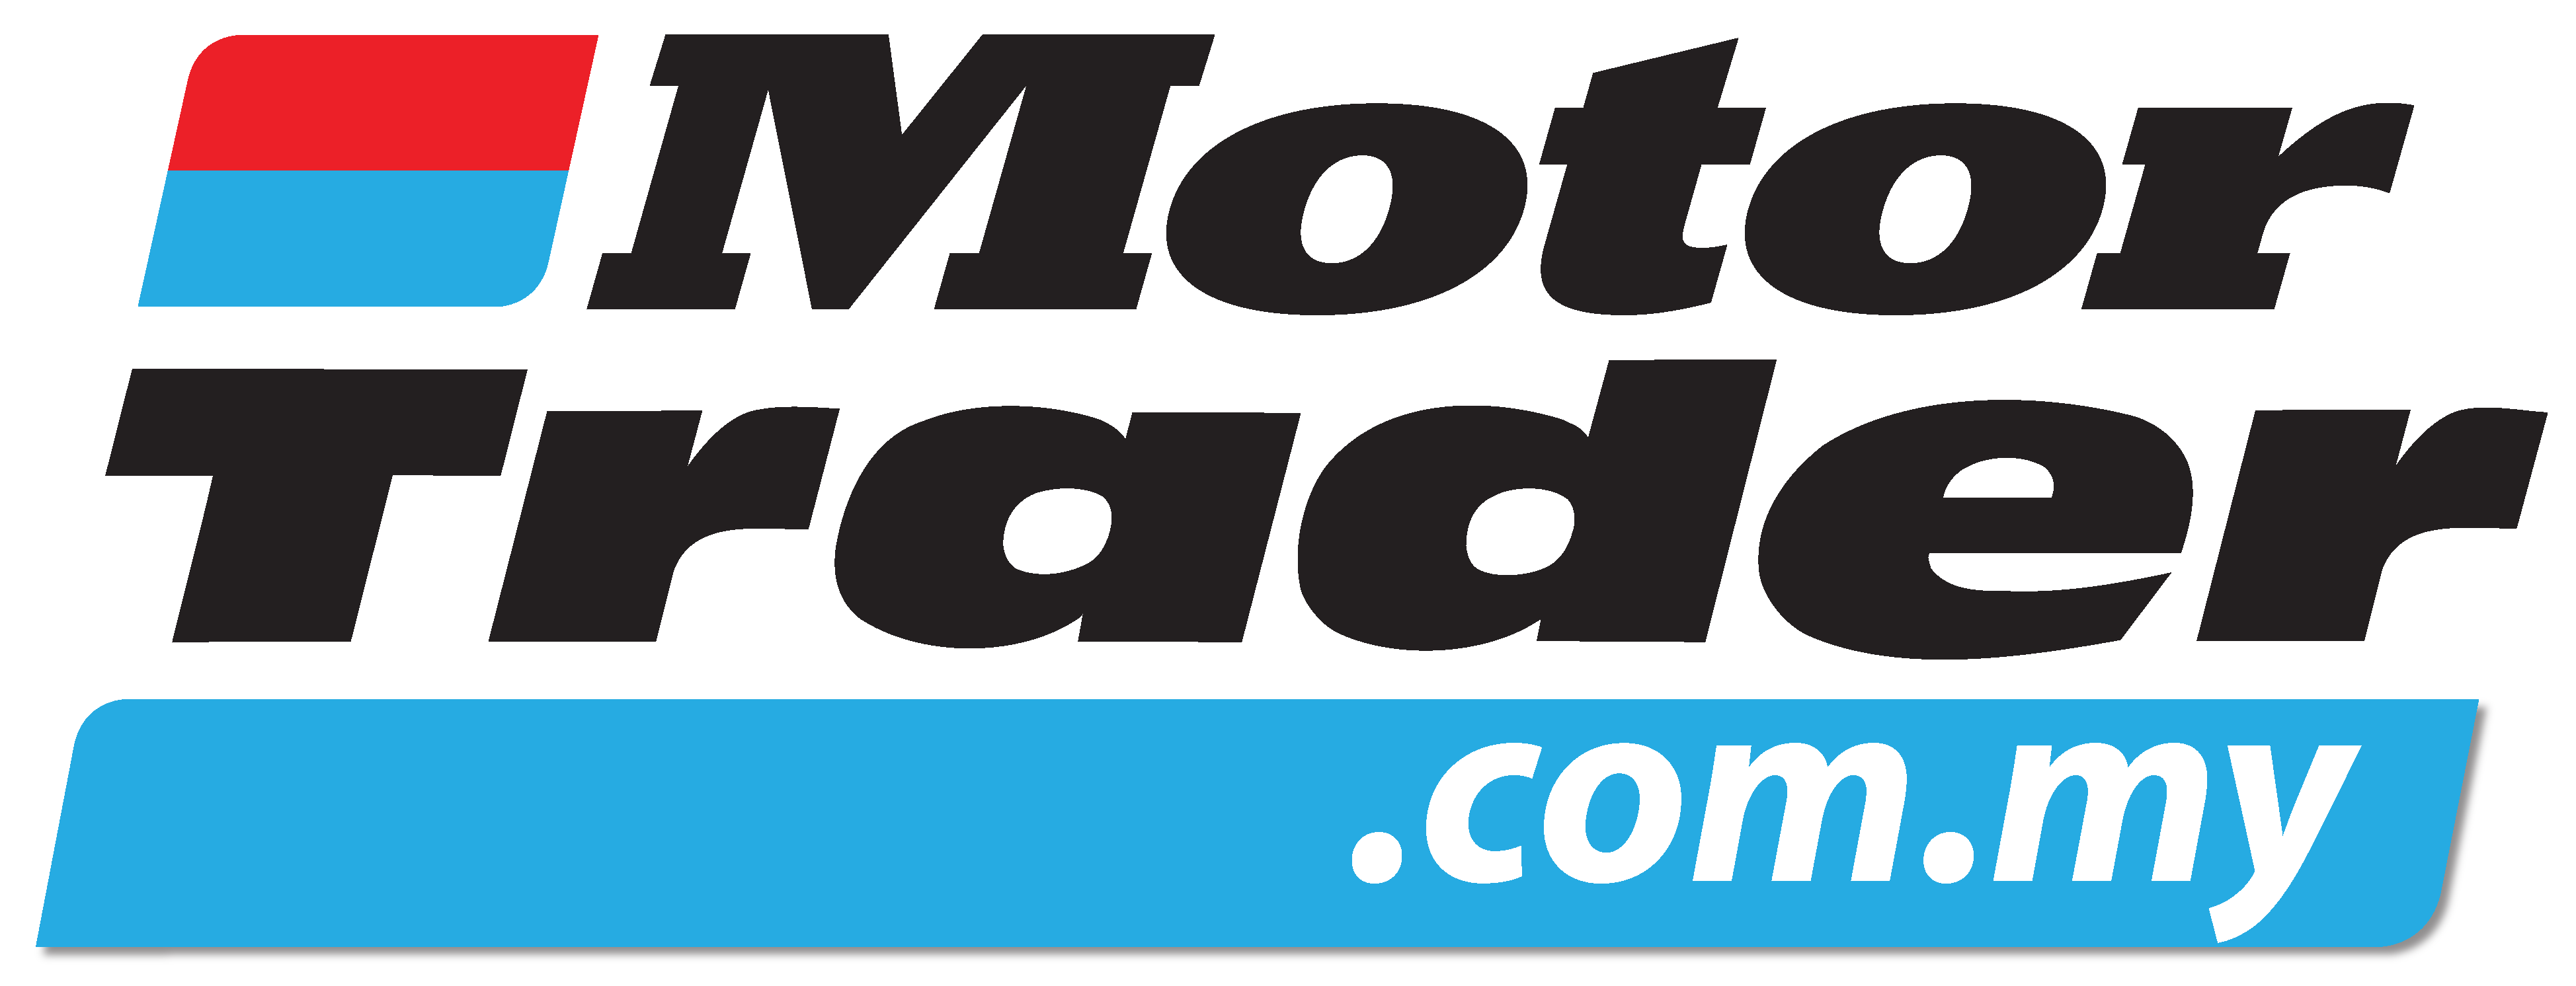 Motor Trader logo